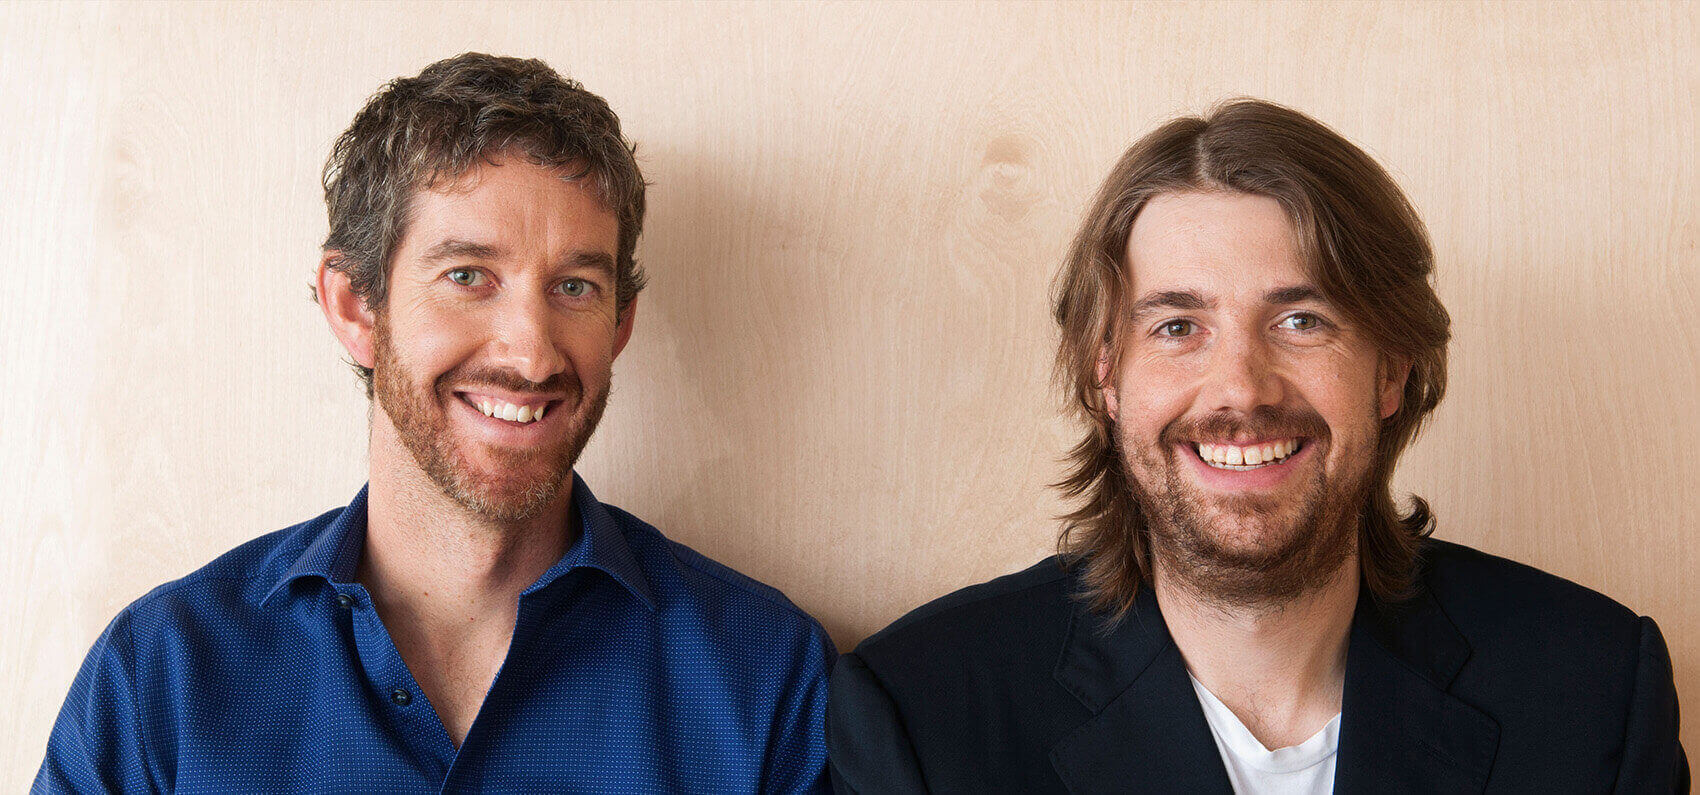 Scott Farquhar és Mike Cannon-Brookes, az Atlassian vezérigazgatói